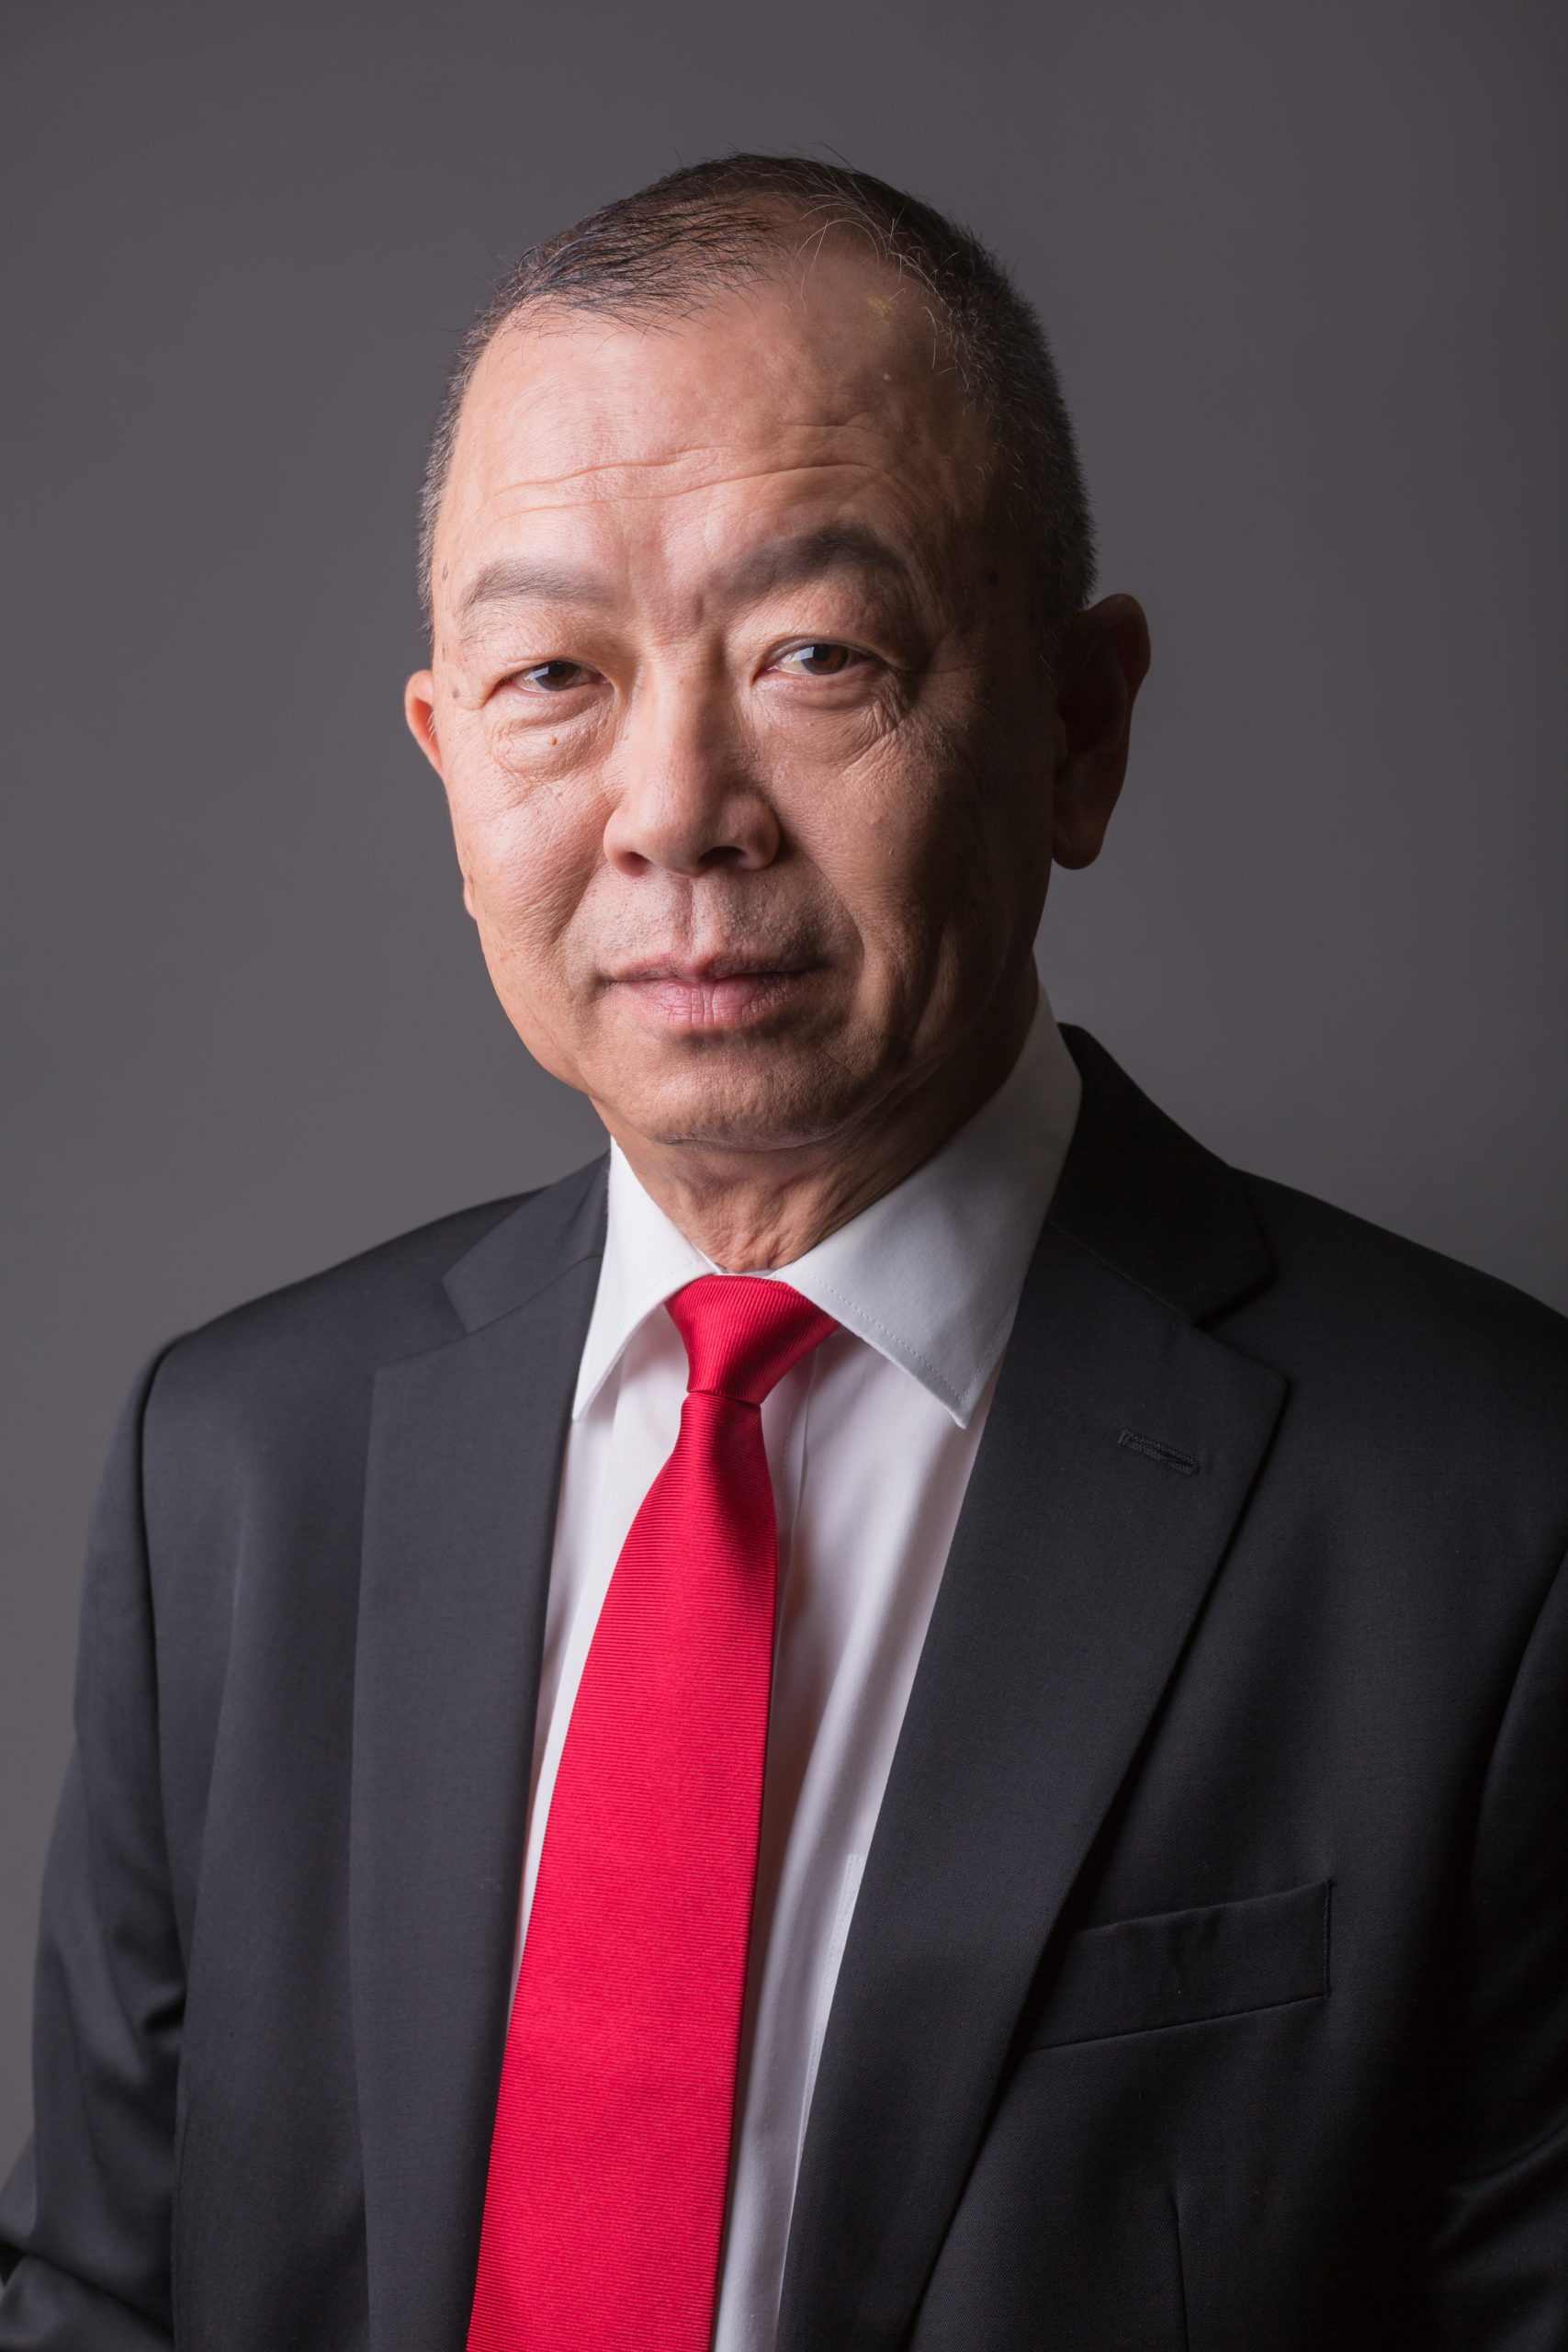 Lim Kheng Chye